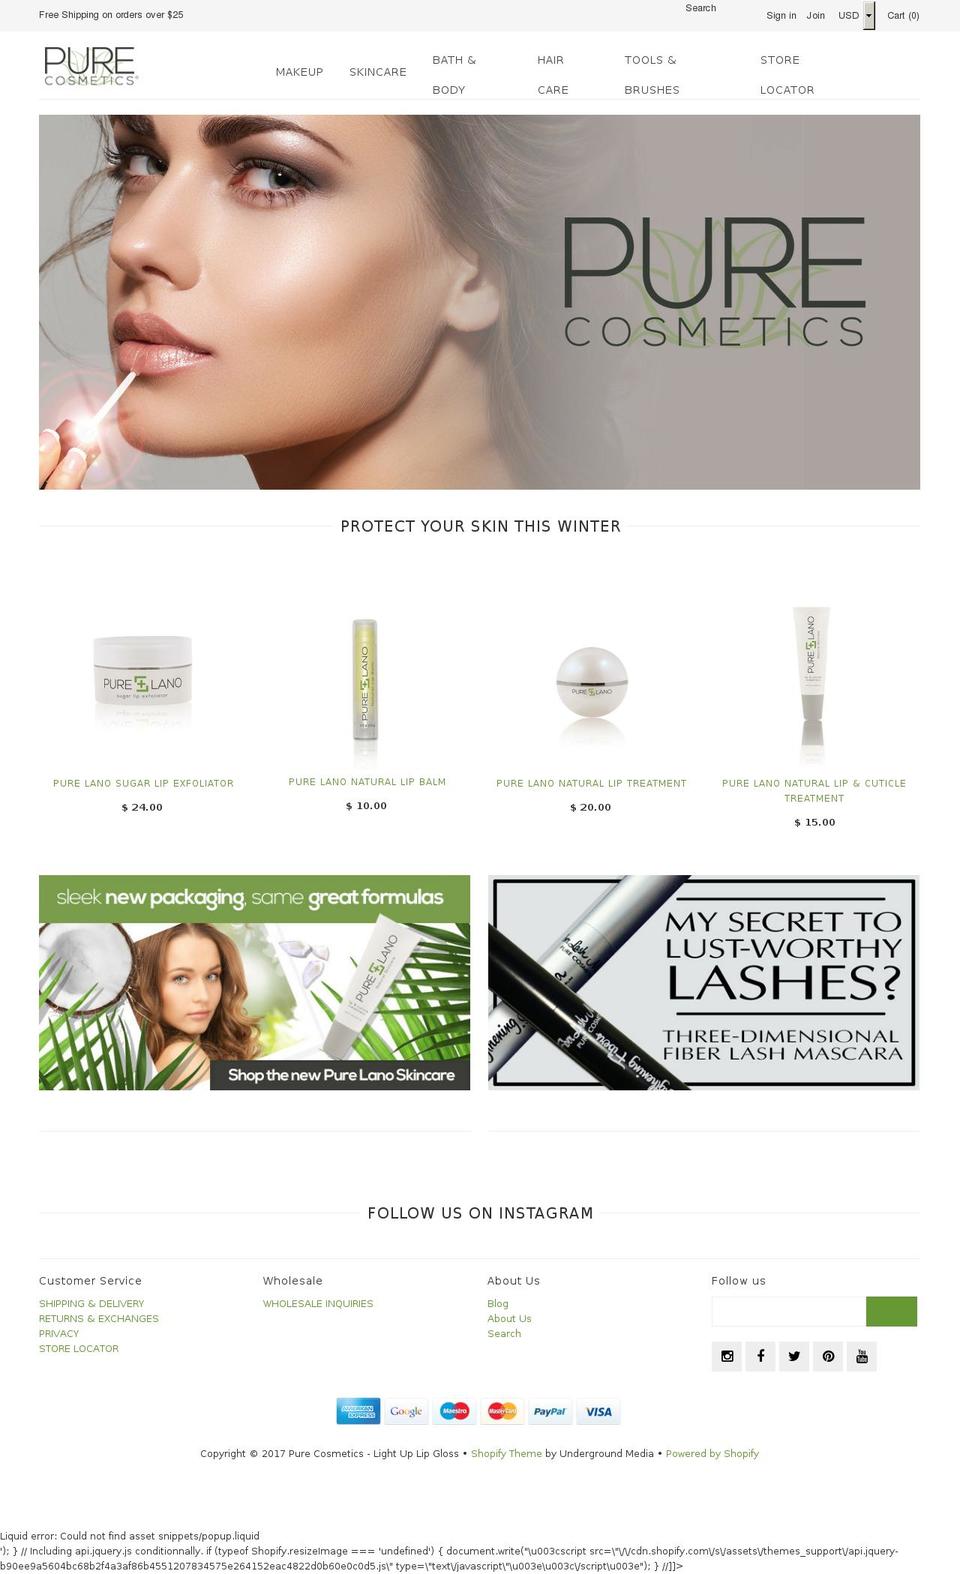 purecosmetics.com shopify website screenshot